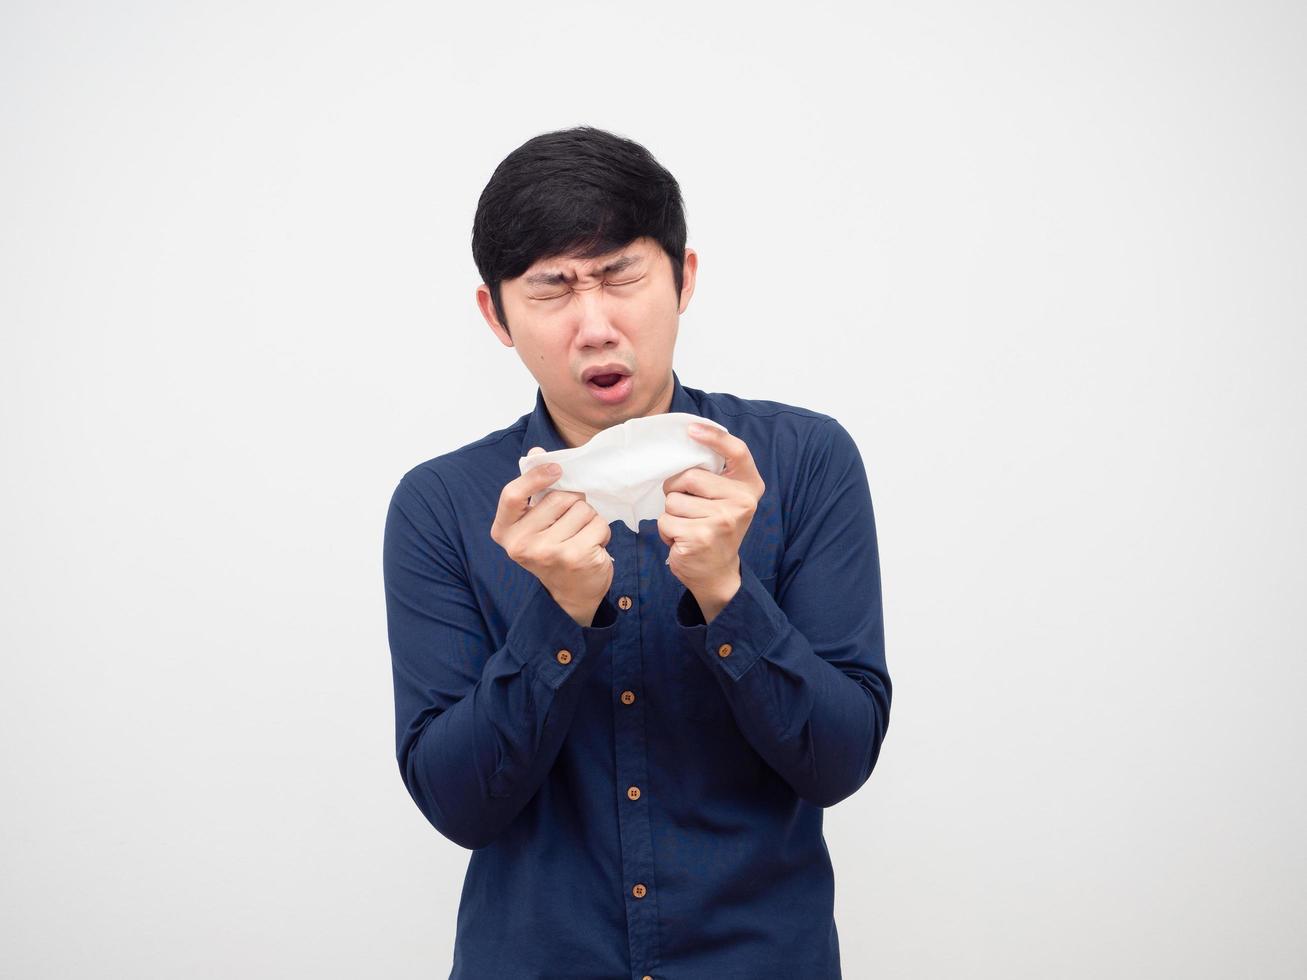 homme asiatique malade et éternue au papier de soie dans sa main fond blanc, concept de malade photo